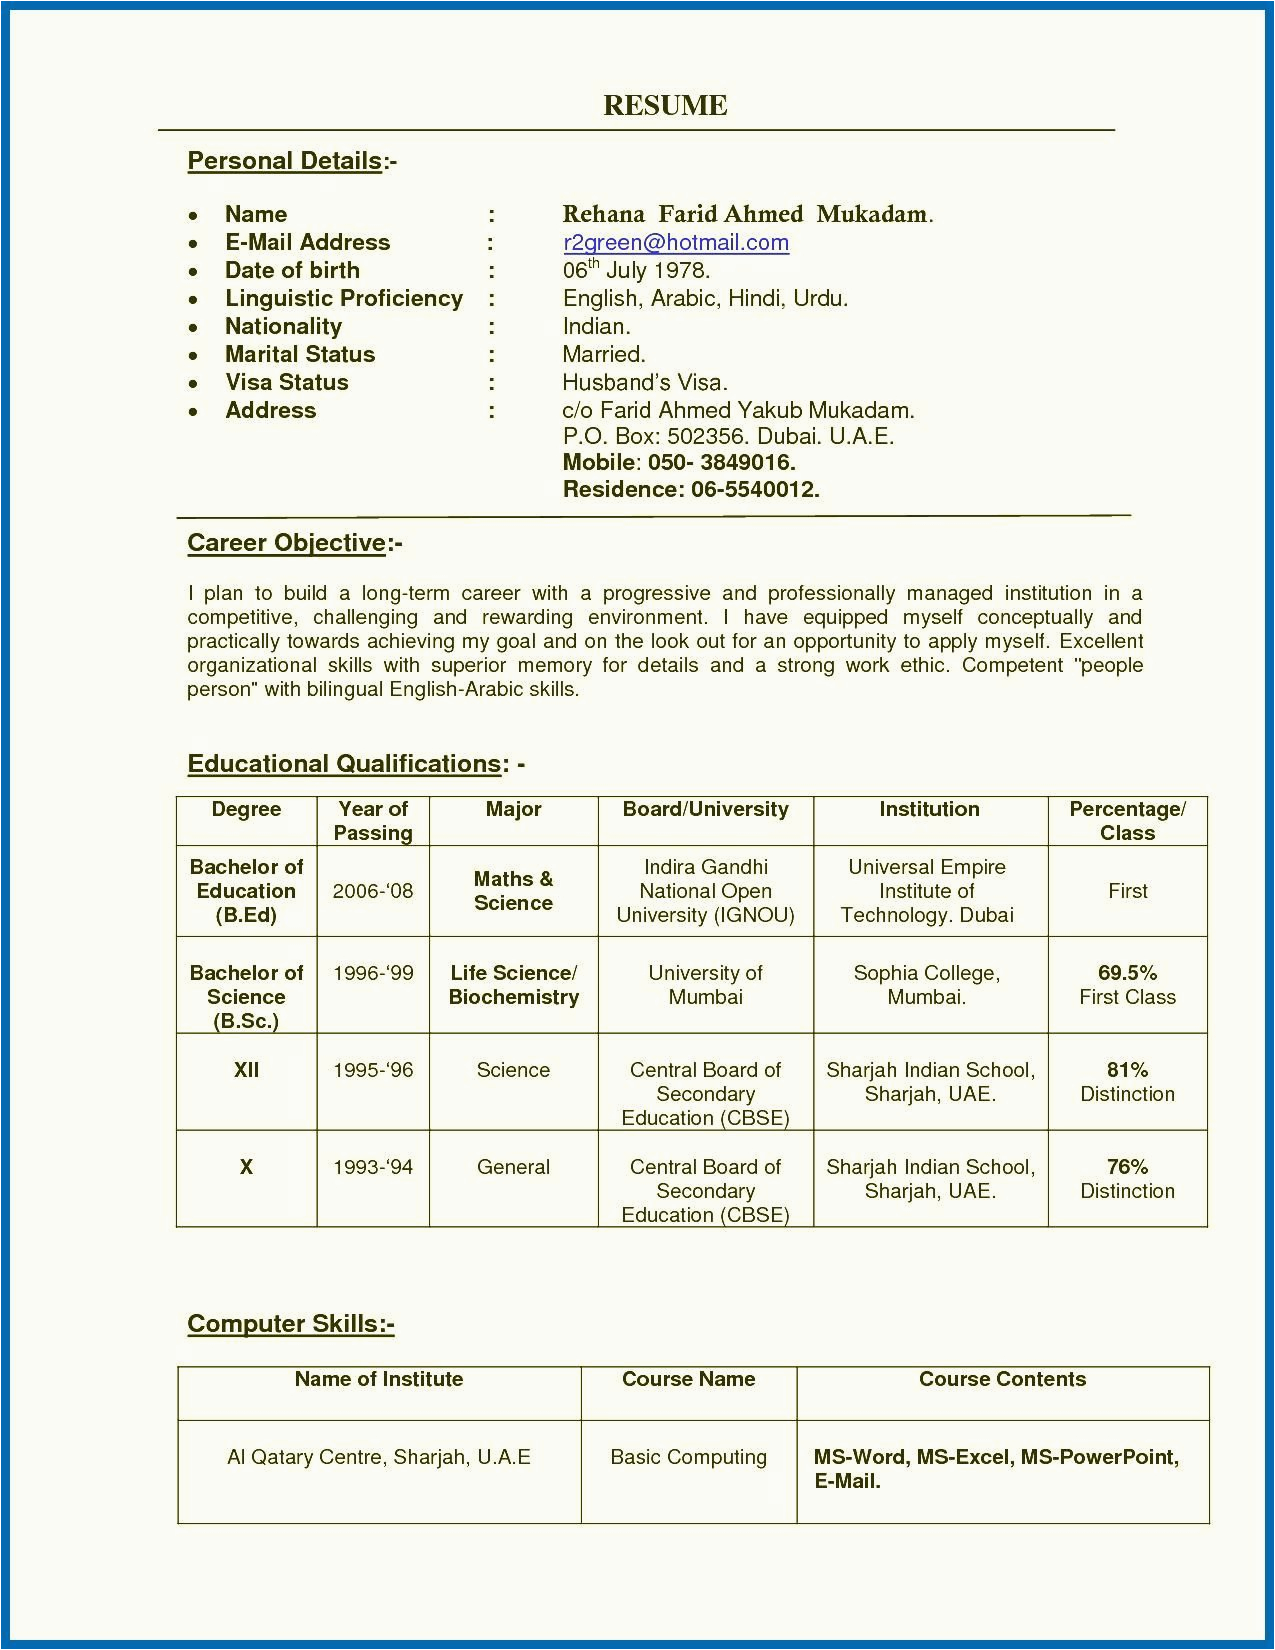 Resume Template for Teachers In India 79b66e1 Teacher Resume format Doc India